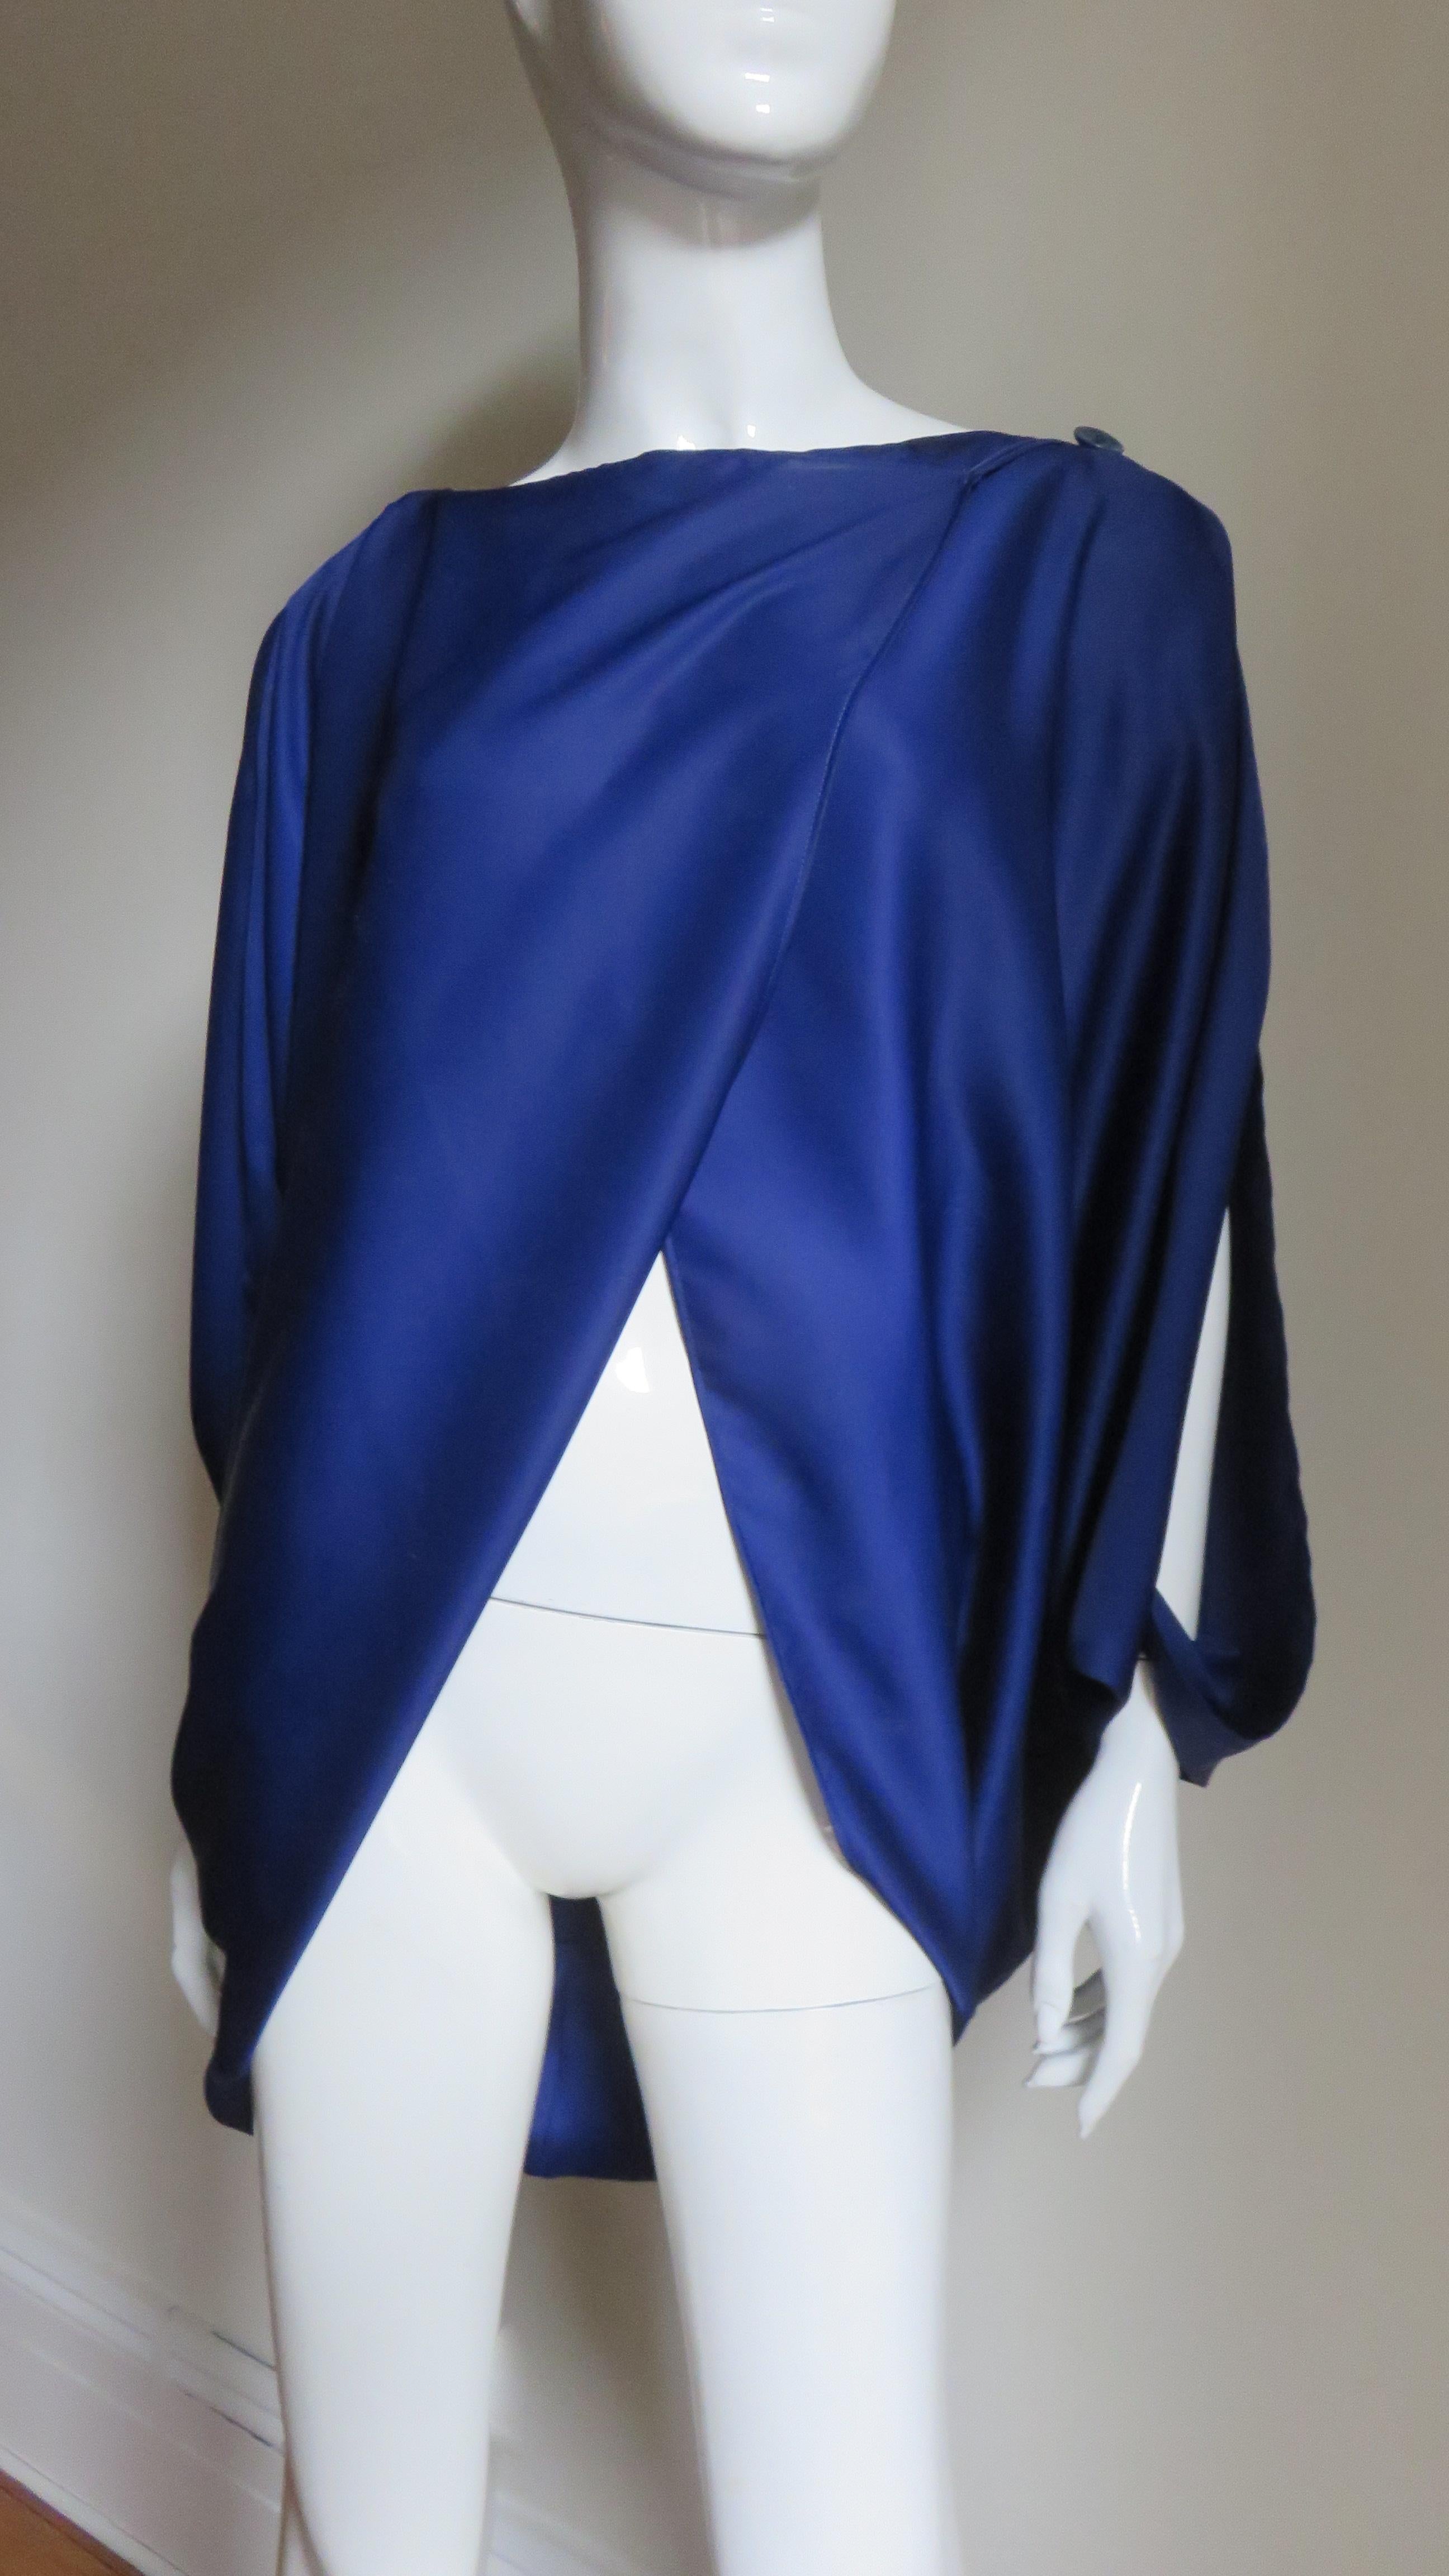 Ein fabelhaftes blaues Oberteil, ein Hemd von Issey Miyake.  Es ist vorne überlappend und entblößt die Taille und knöpft an der Schulter.  Der Rücken ist voller und länger und die Ärmel sind von der Schulter bis zum Handgelenk offen.
Passend für die